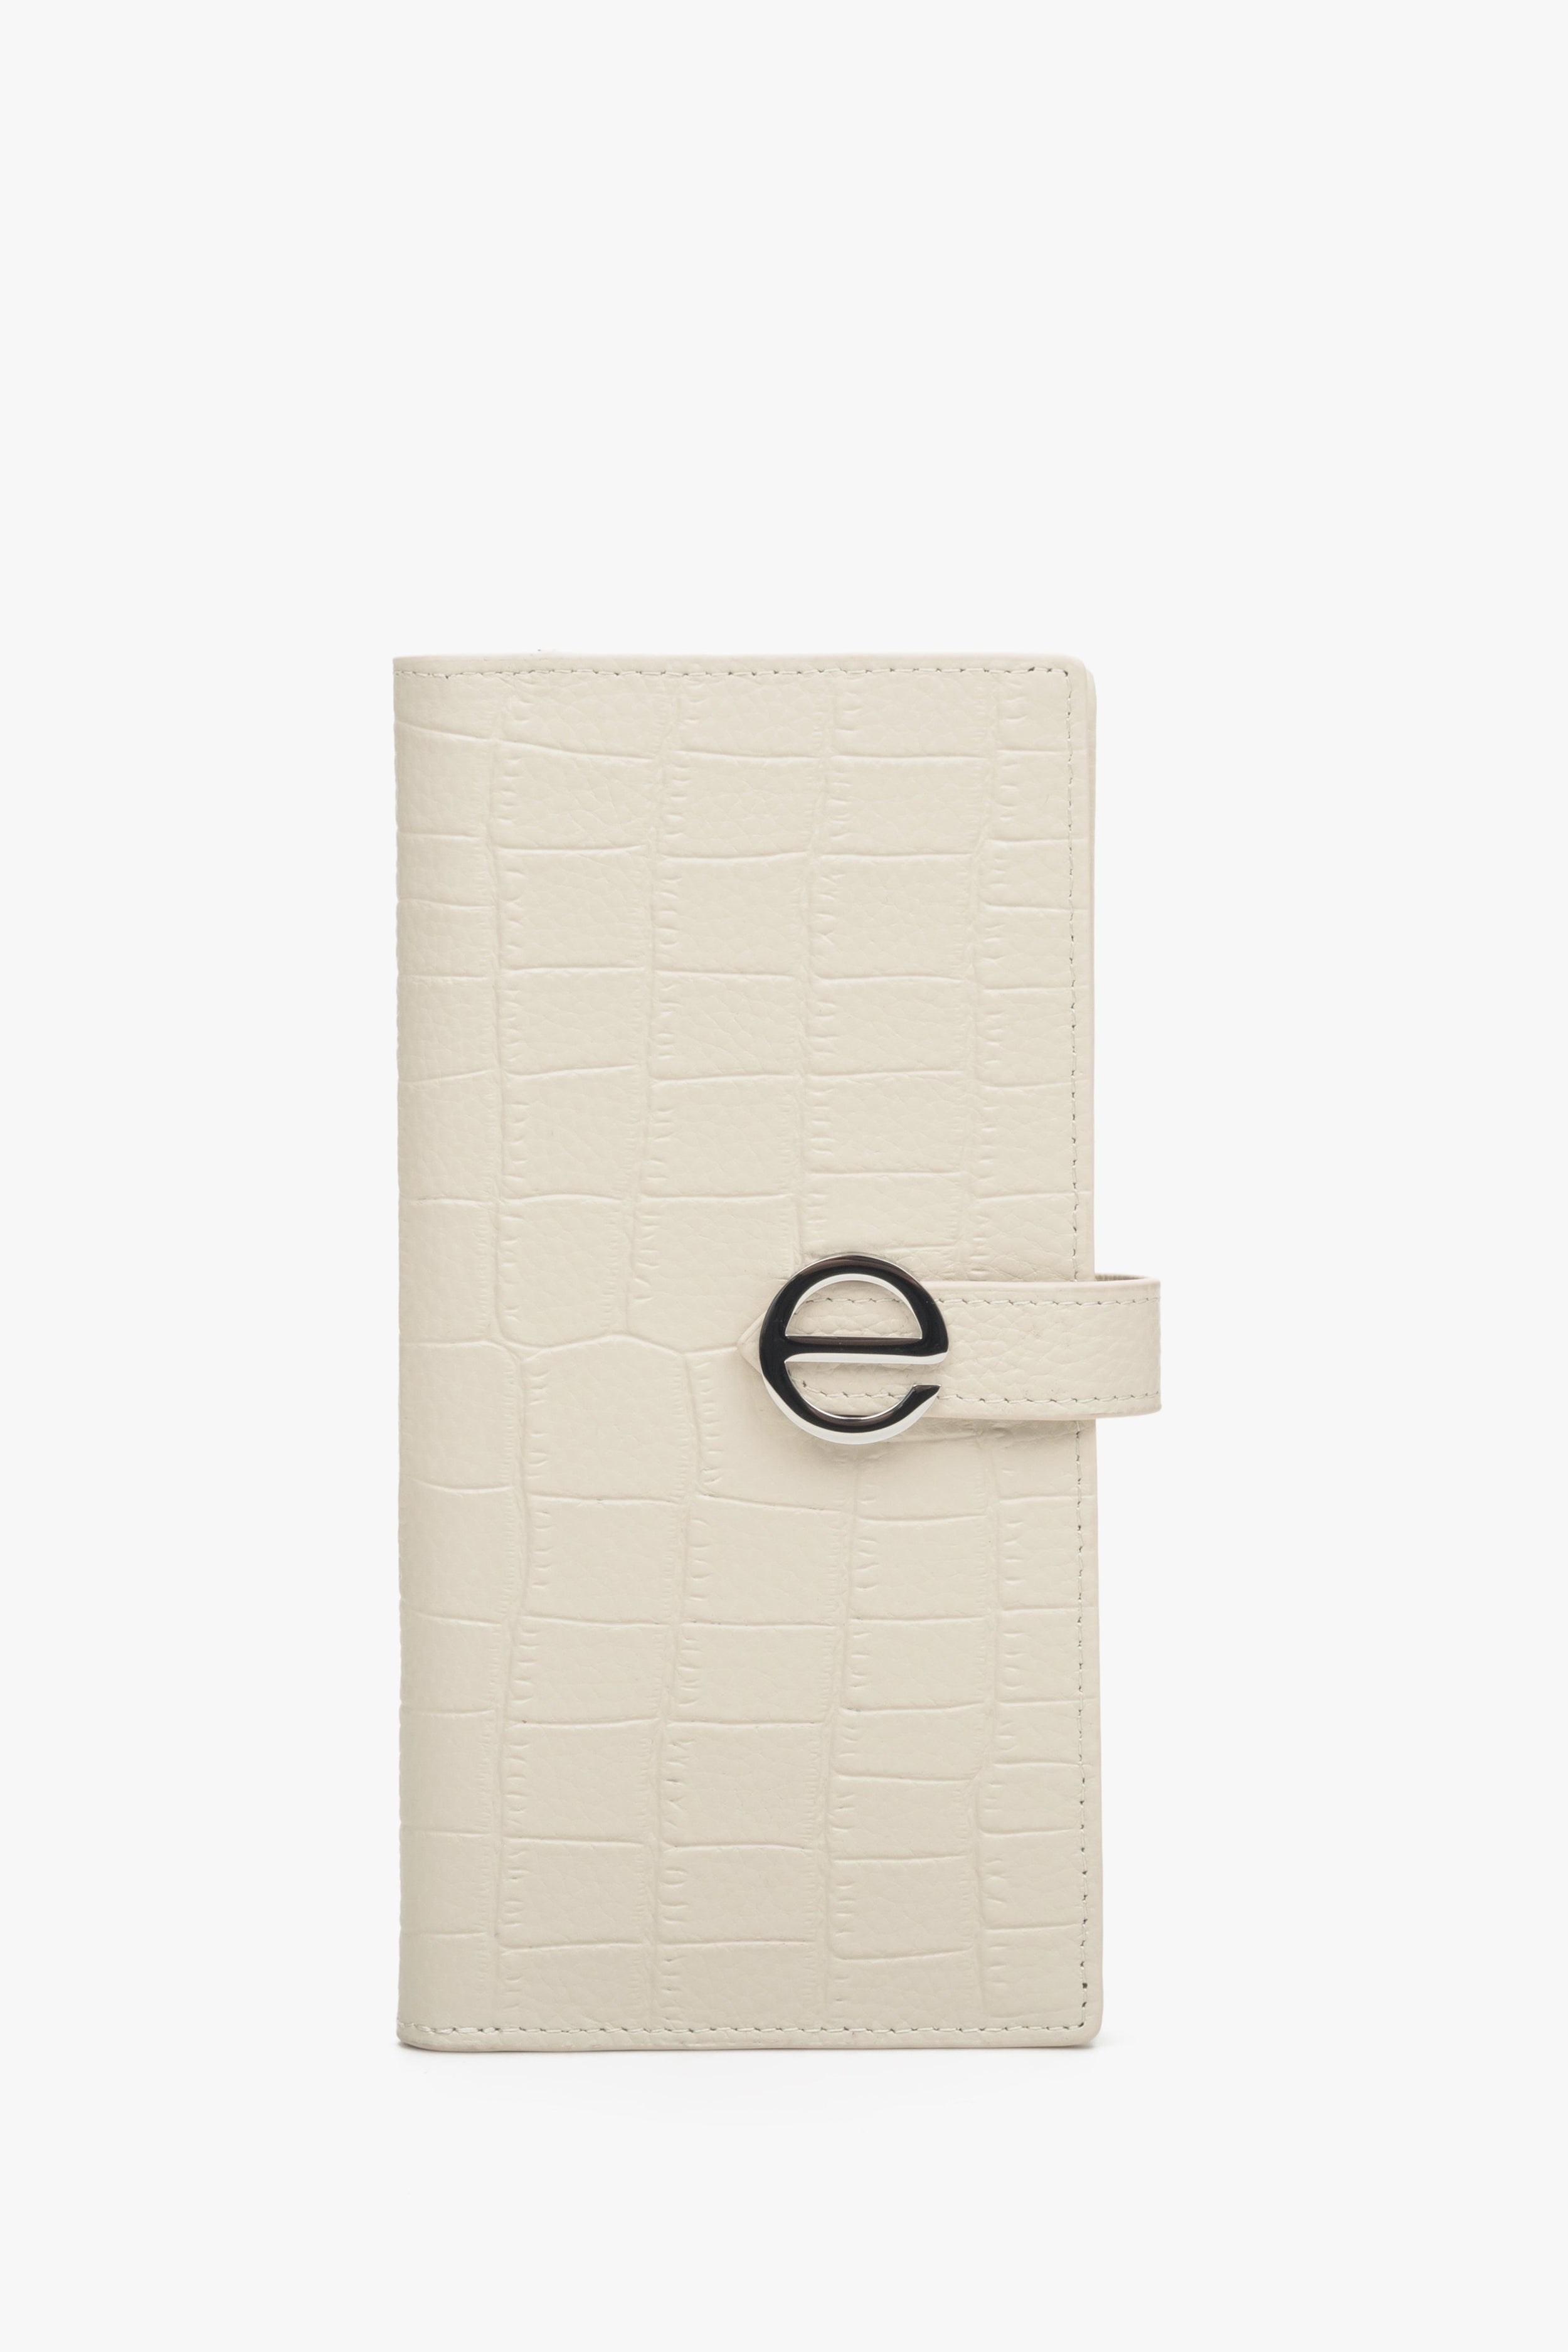 Estro: Duży jasnobeżowy portfel damski z tłoczonej skóry naturalnej ze srebrnymi detalami